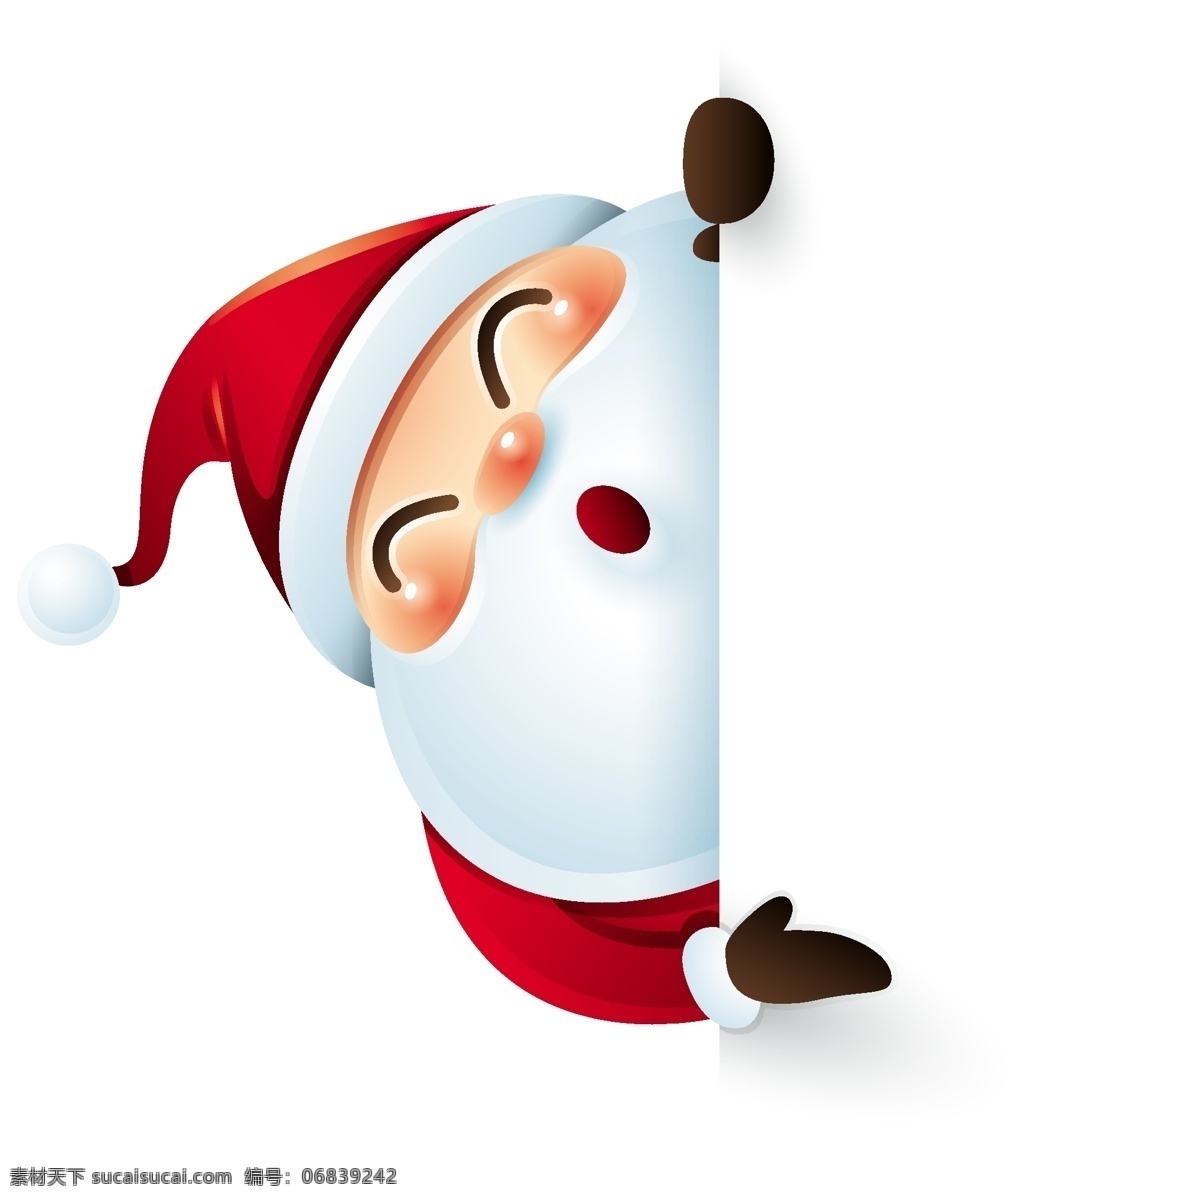 可爱 圣诞节 老人 矢量 卡通 红色 白胡子 人物 形象 节日 装饰